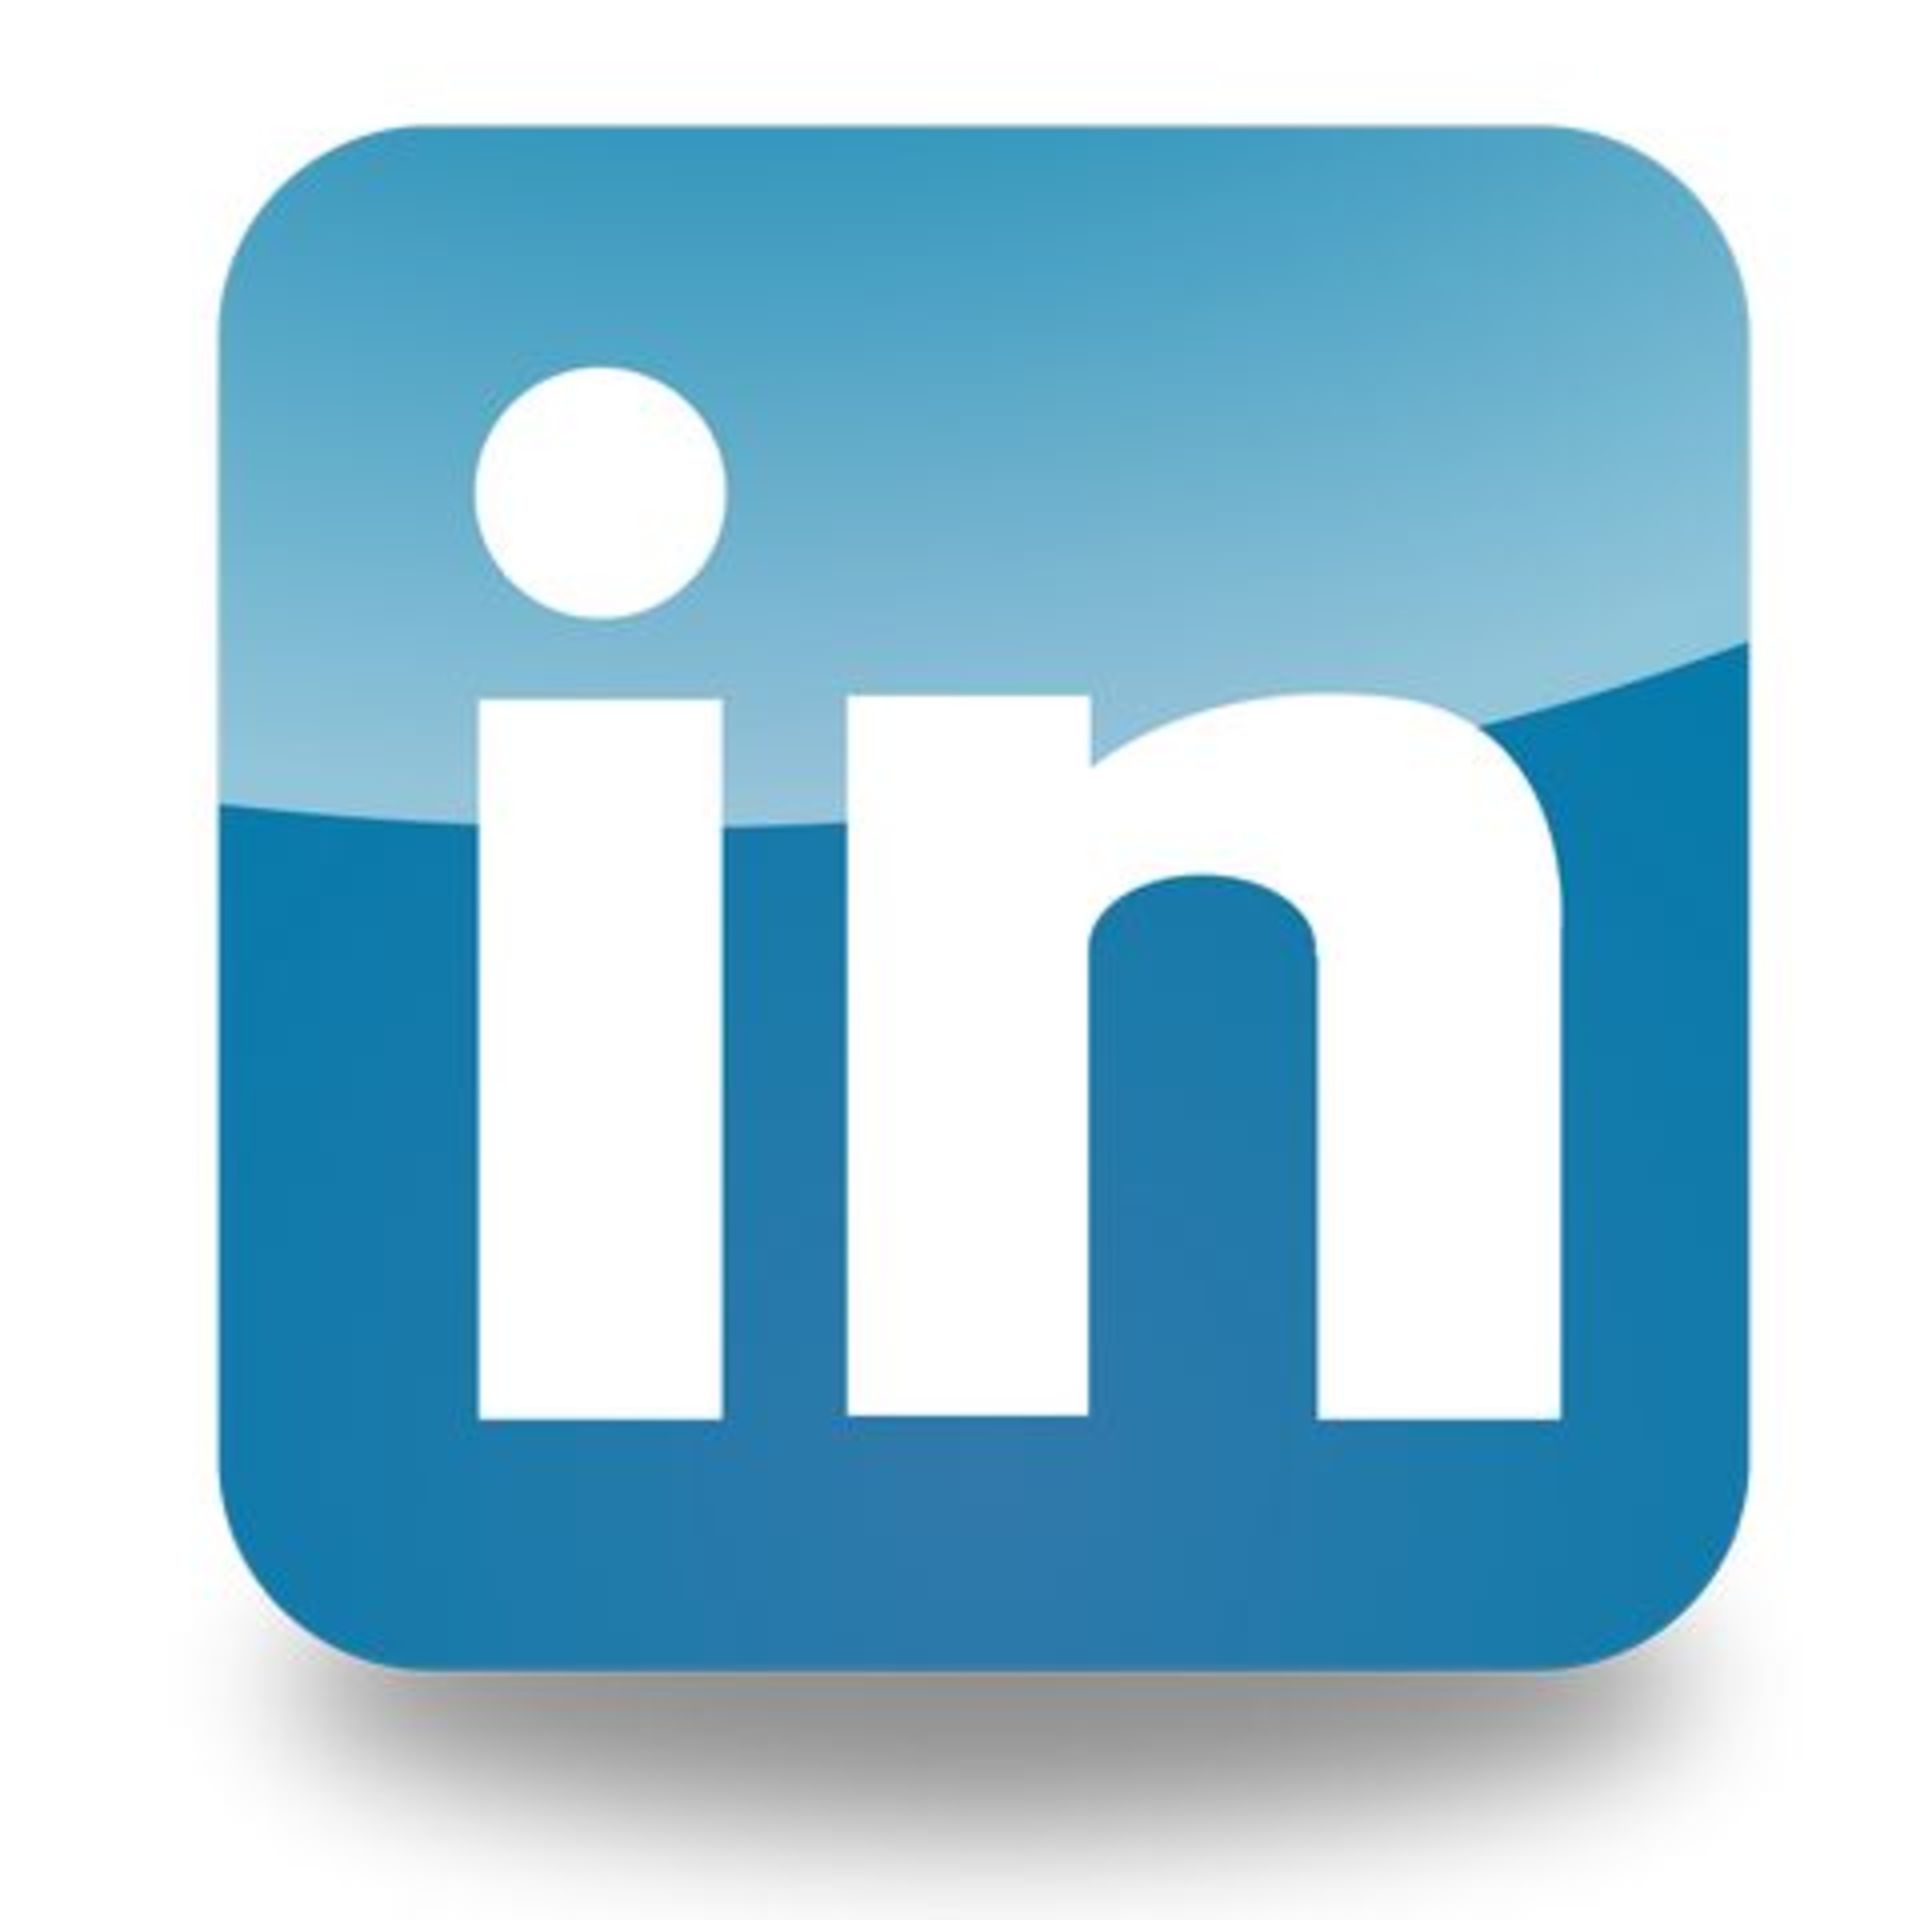 Social Media Links Follow Us On Facebook Follow us on Linkedin Follow us on Instagram, - Image 2 of 3